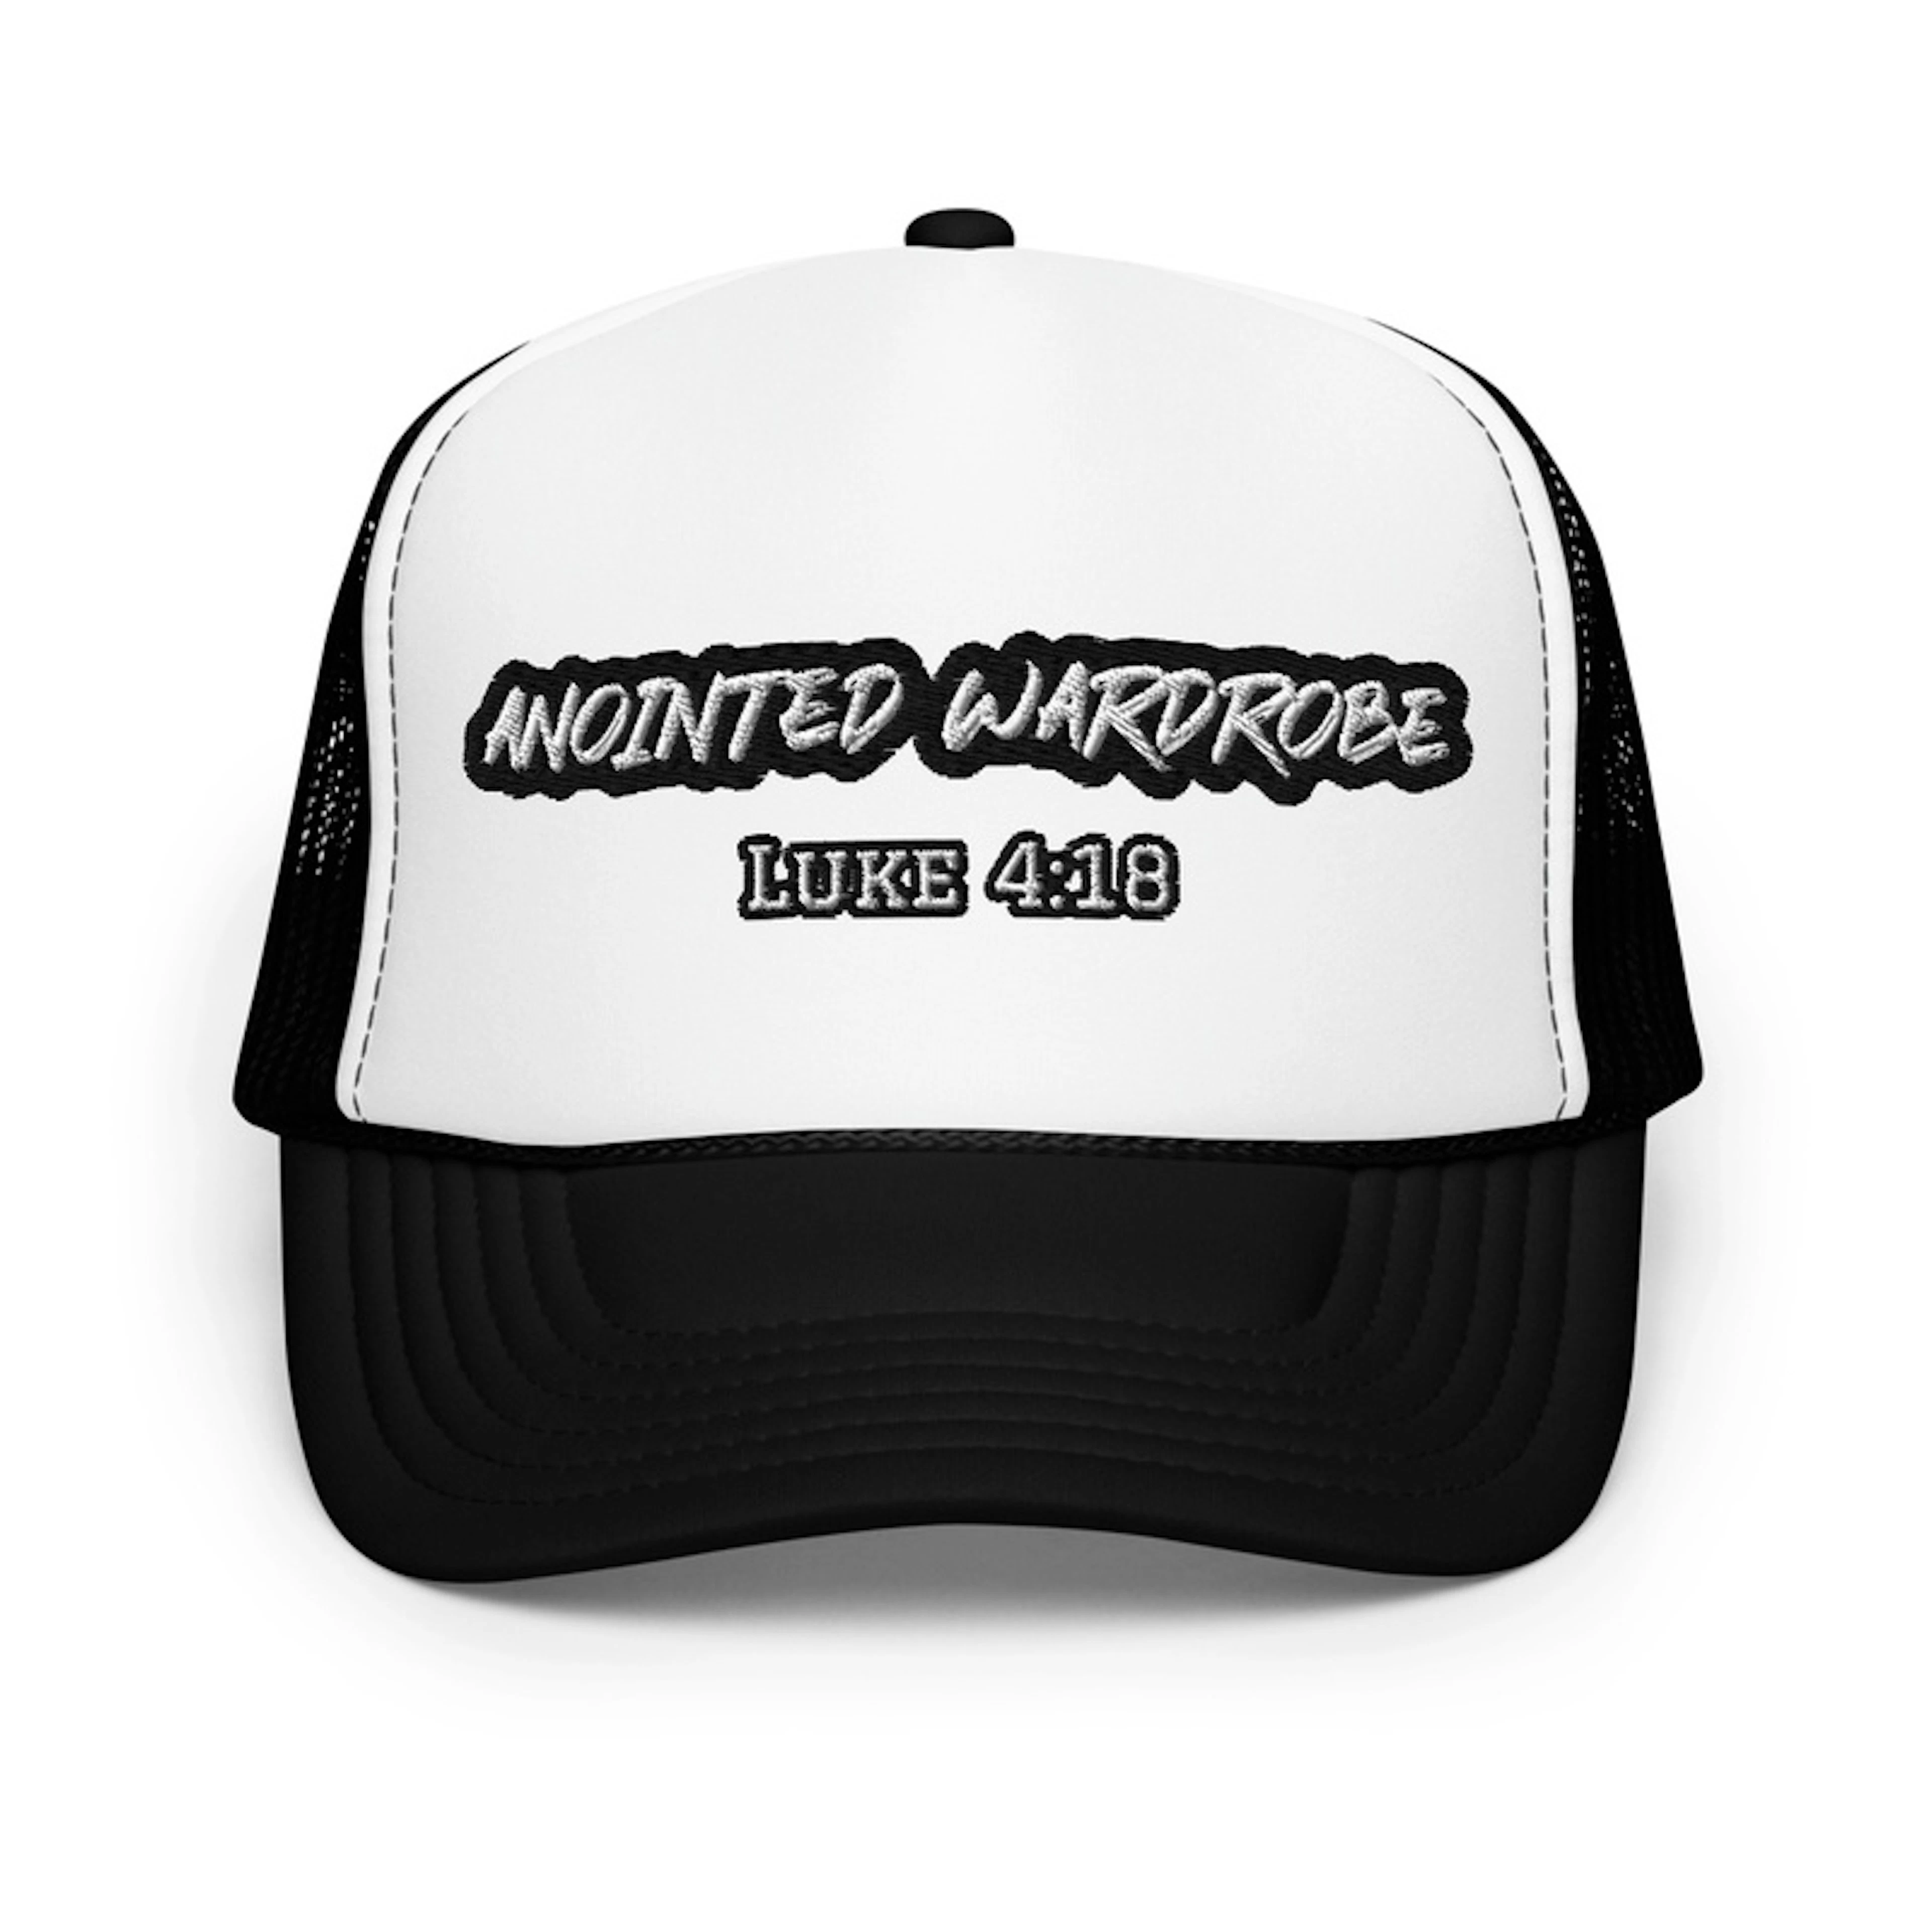 Anointed Wardrobe Foam Trucker Hat 